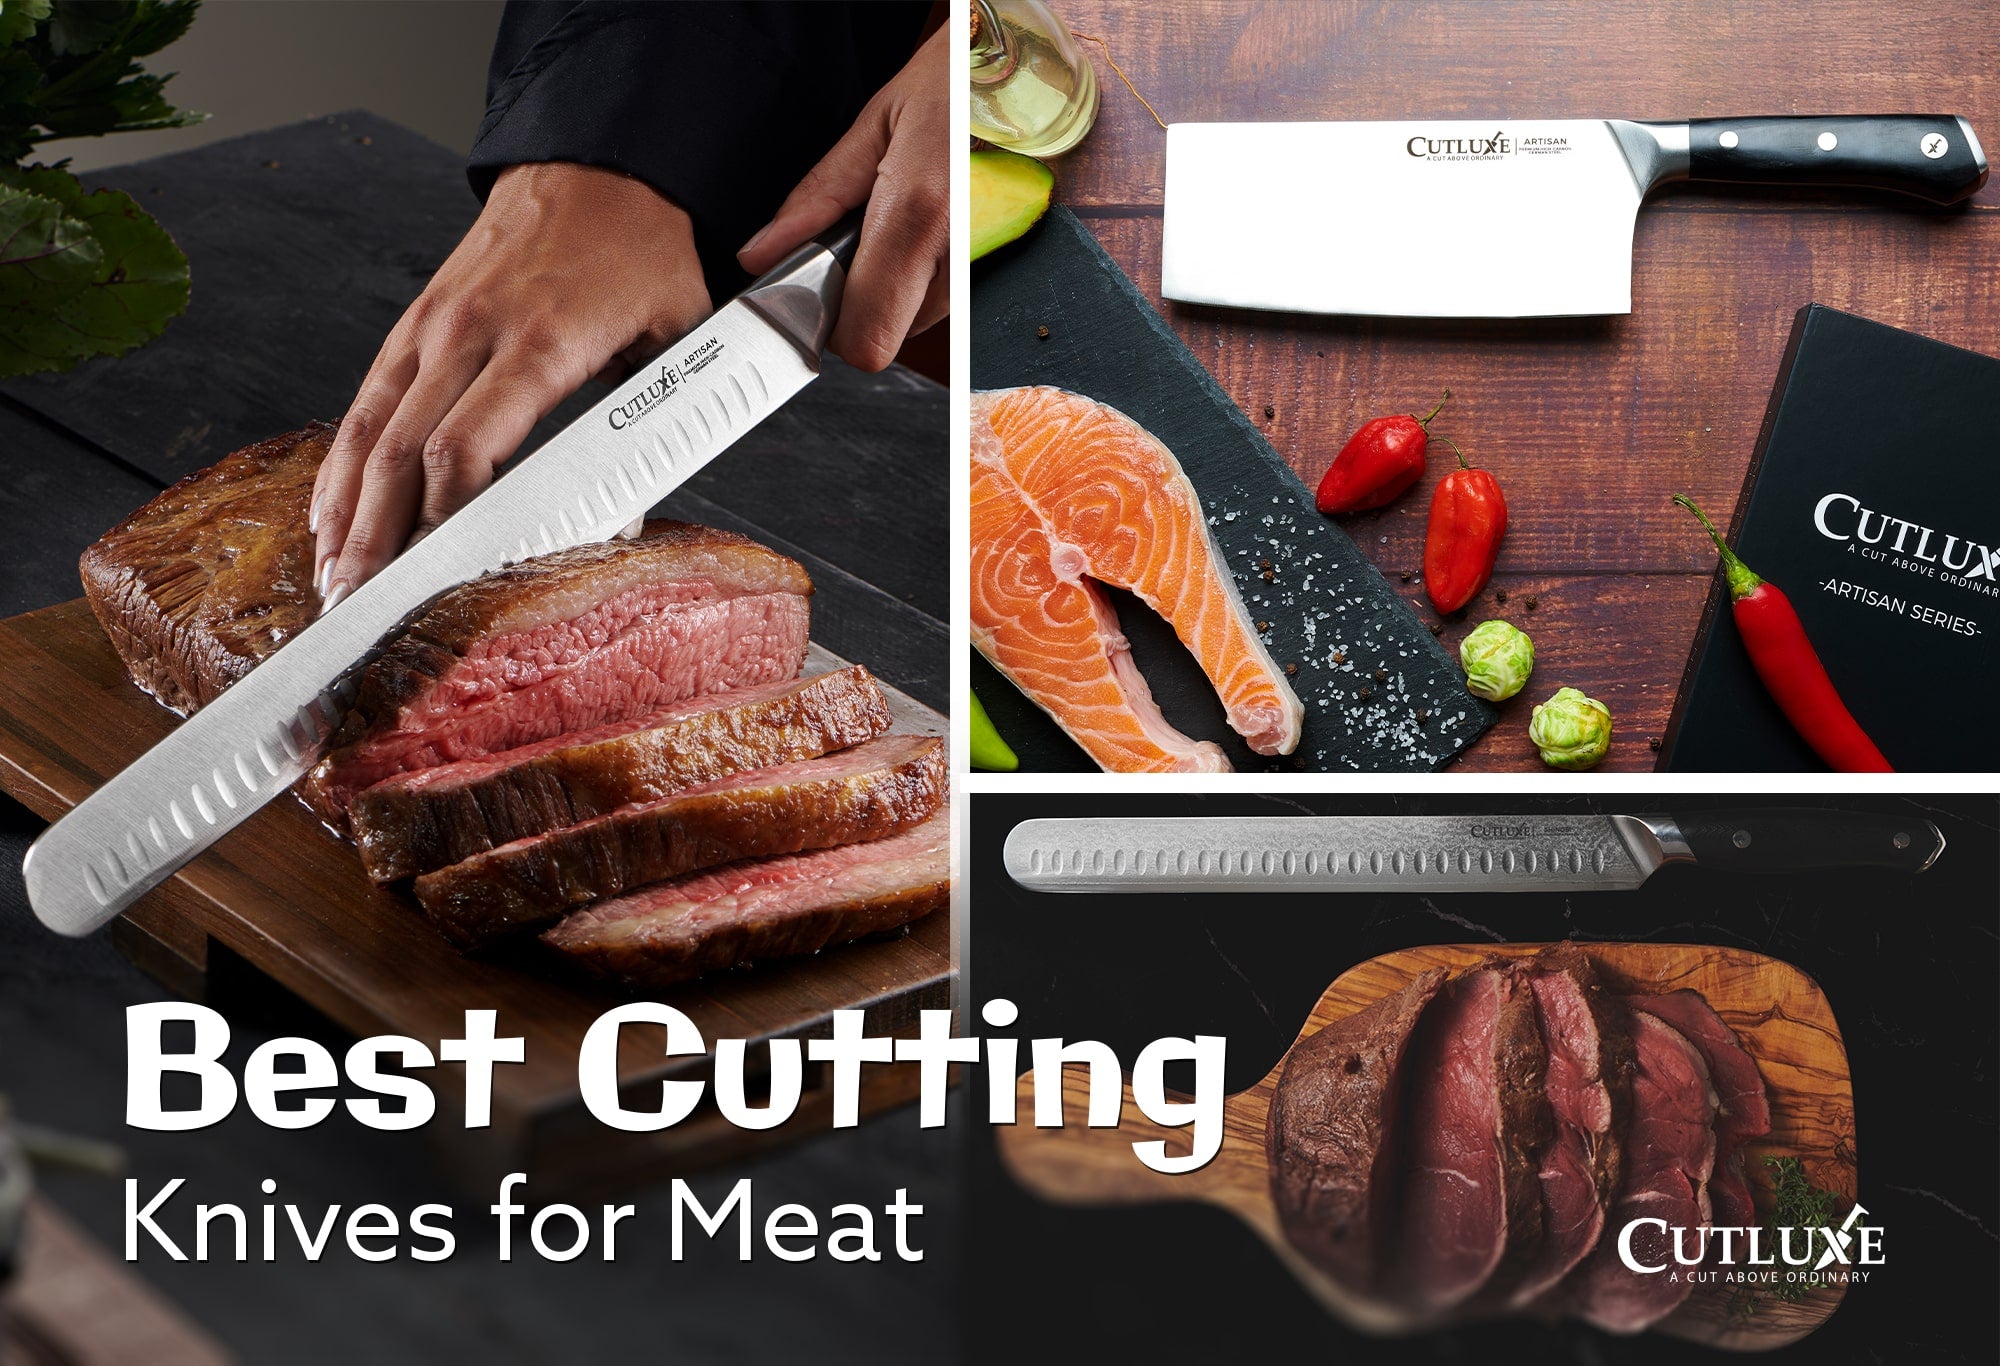 http://www.cutluxe.com/cdn/shop/articles/best-cutting-knives-for-meat-new.jpg?v=1663911805